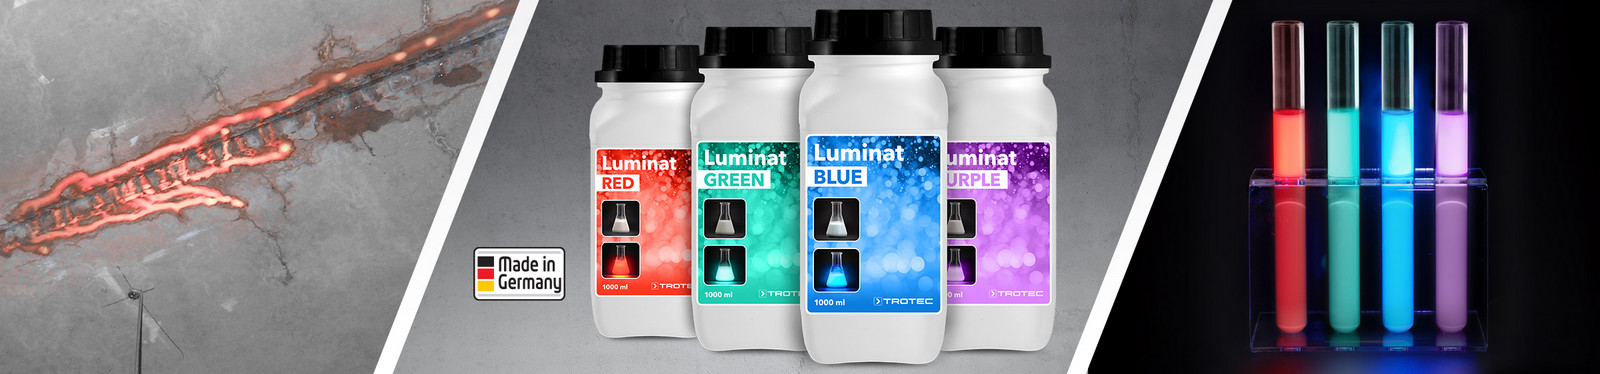 Coloranti lumiscenti della serie Trotec Luminat per l'attivazione della fluorescenza UV nel rilevamento delle perdite